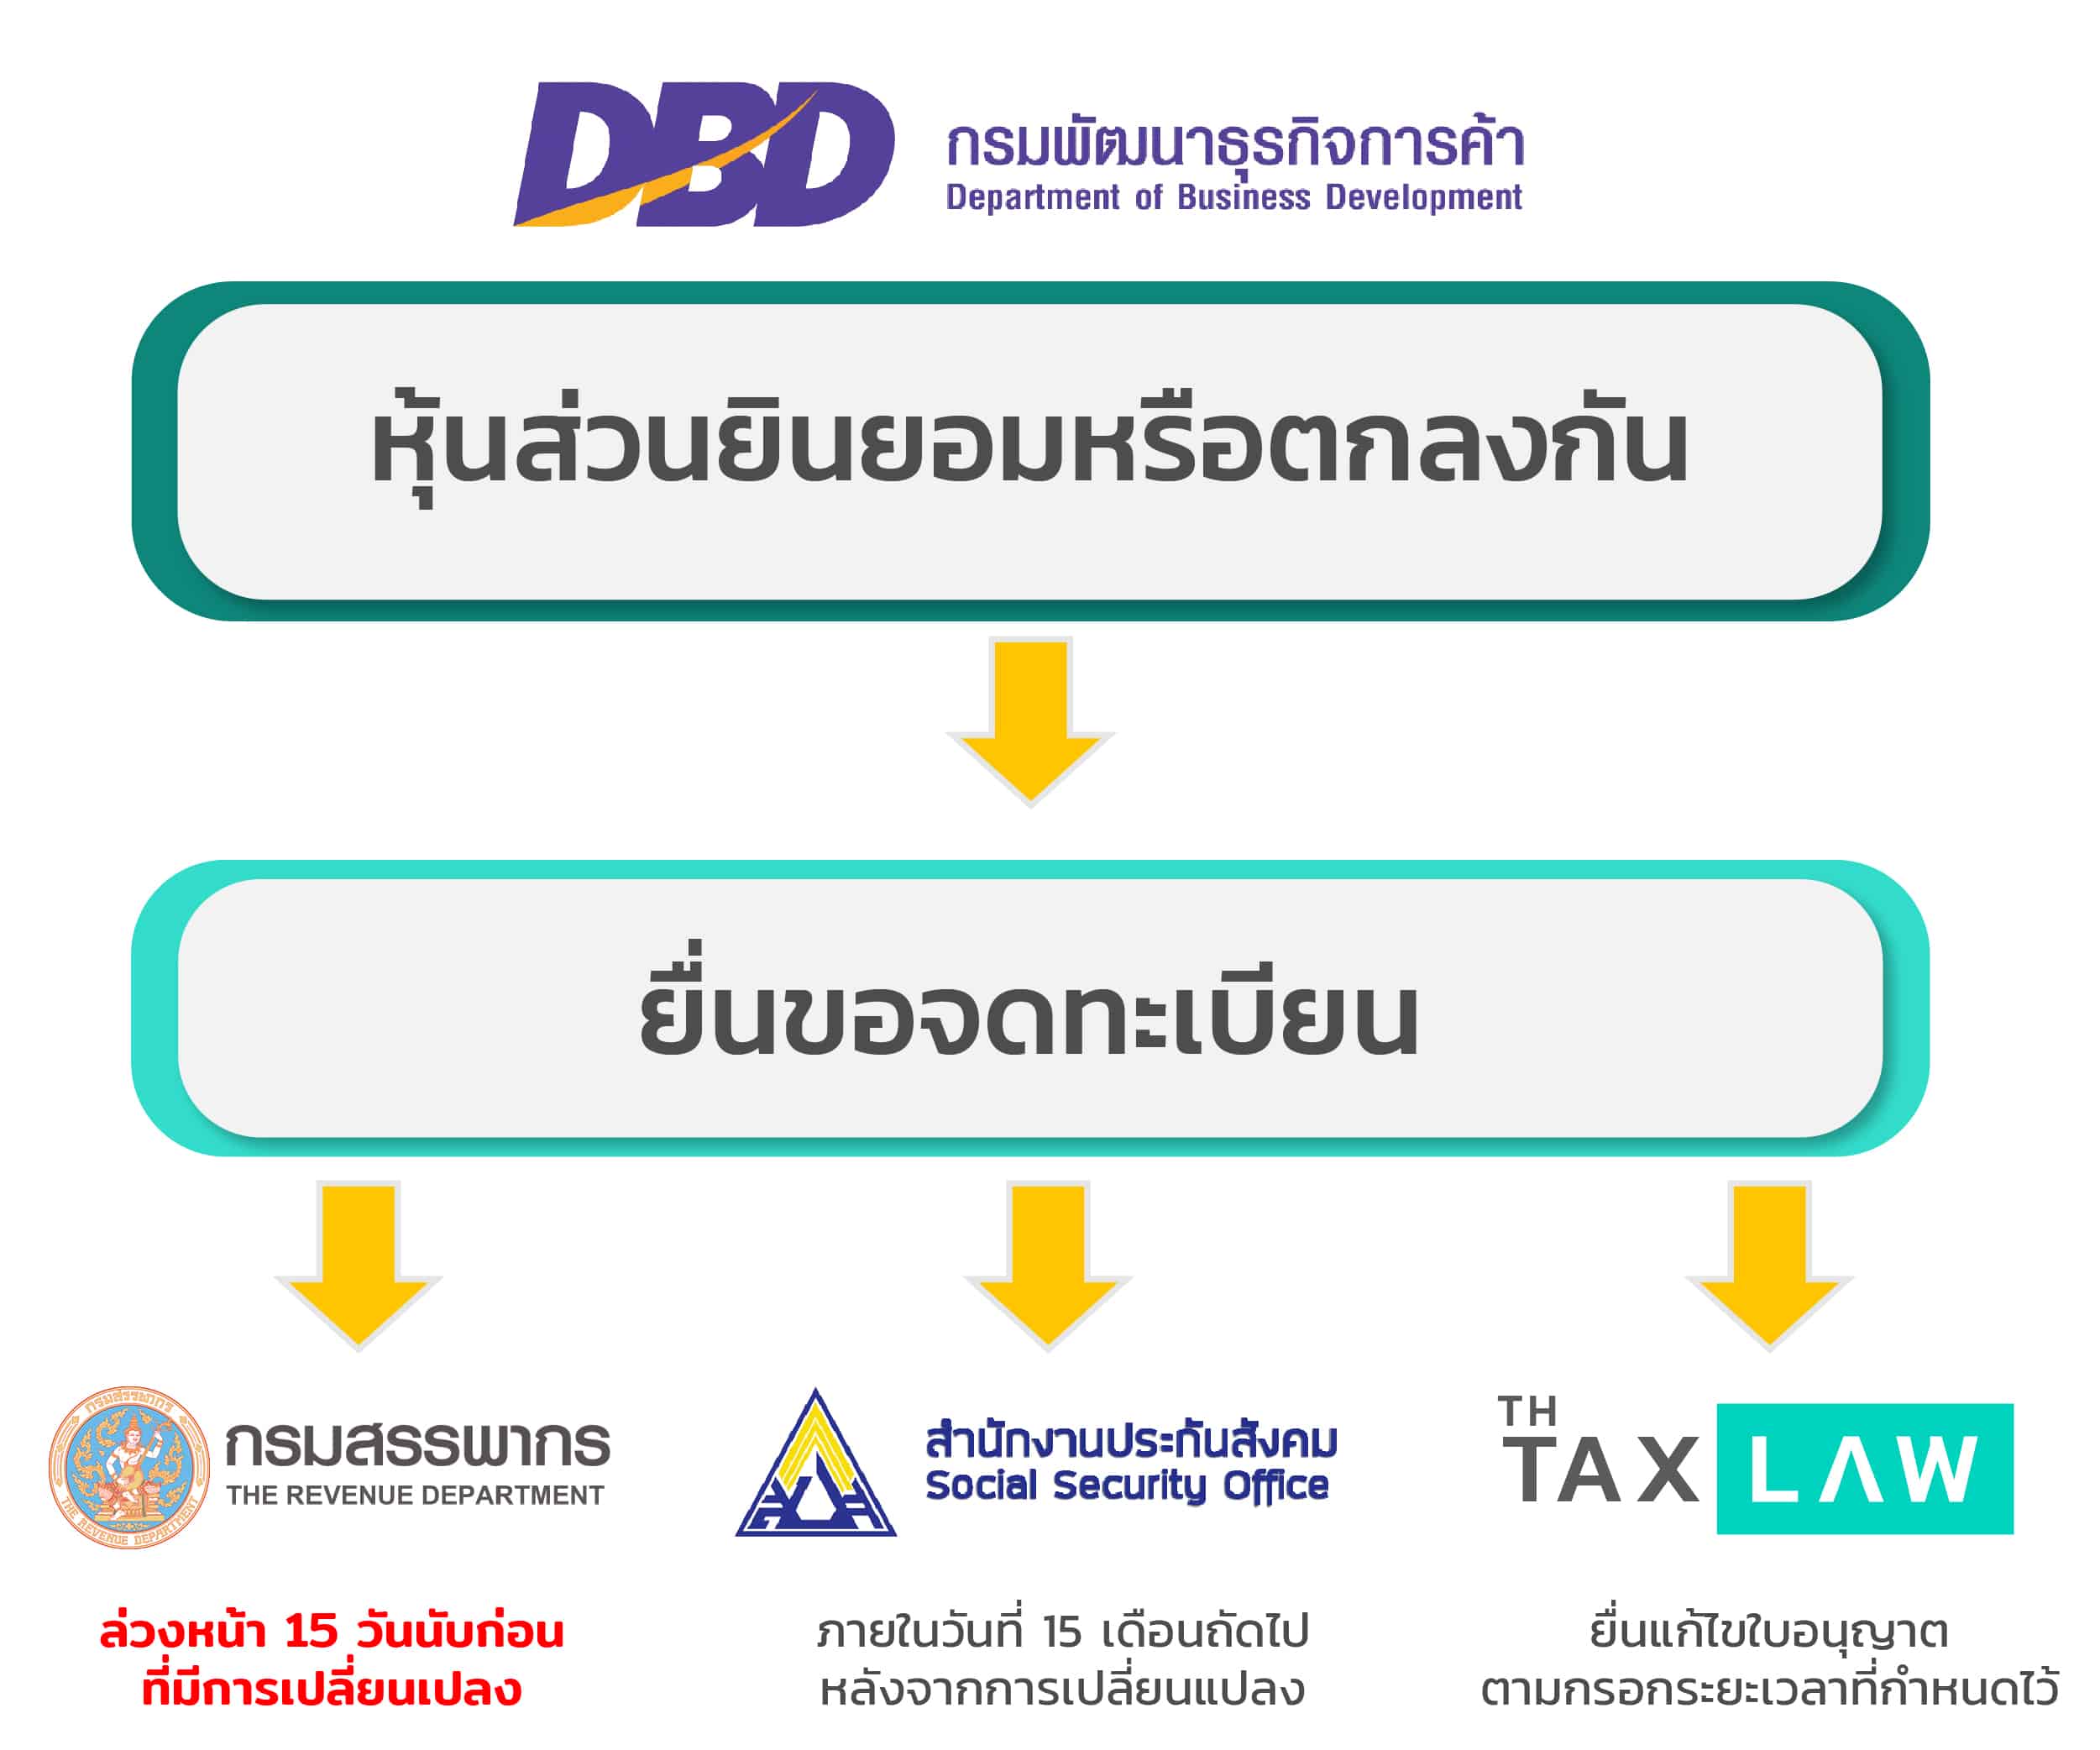 ย้ายที่อยู่ห้างหุ้นส่วนจำกัด เพิ่มสาขาห้างหุ้นส่วน ลดสาขาห้างหุ้นส่วน |  Best Promotion สำหรับ 10 คนแรกของเดือน | Thai Tax Law